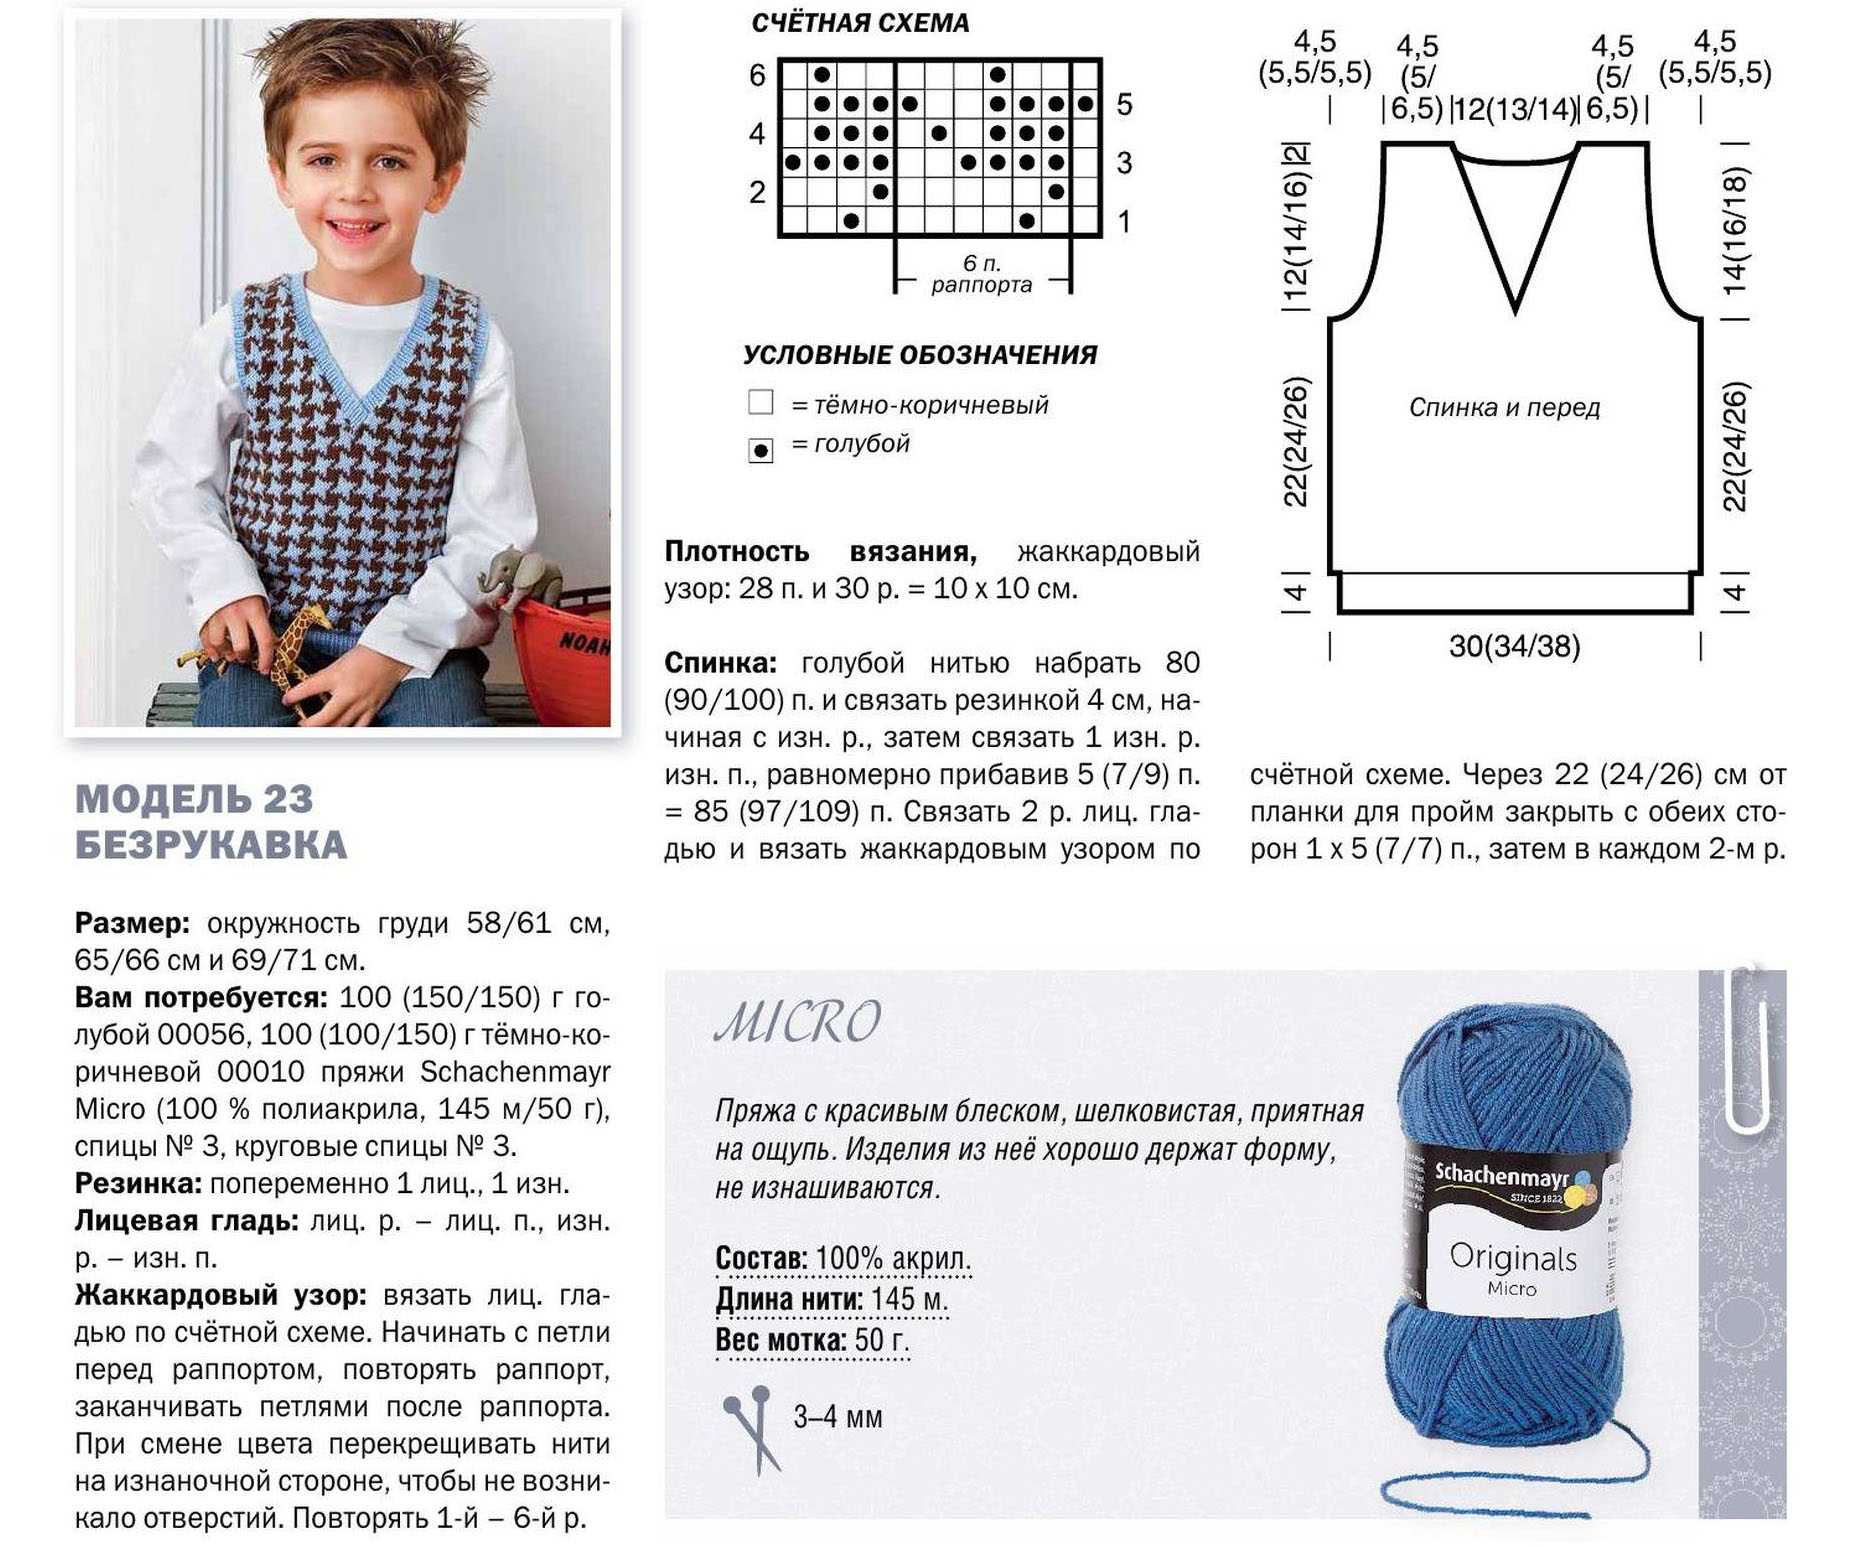 Жилетка спицами для малыша с описанием вязания и схемой в фото мастер-классе